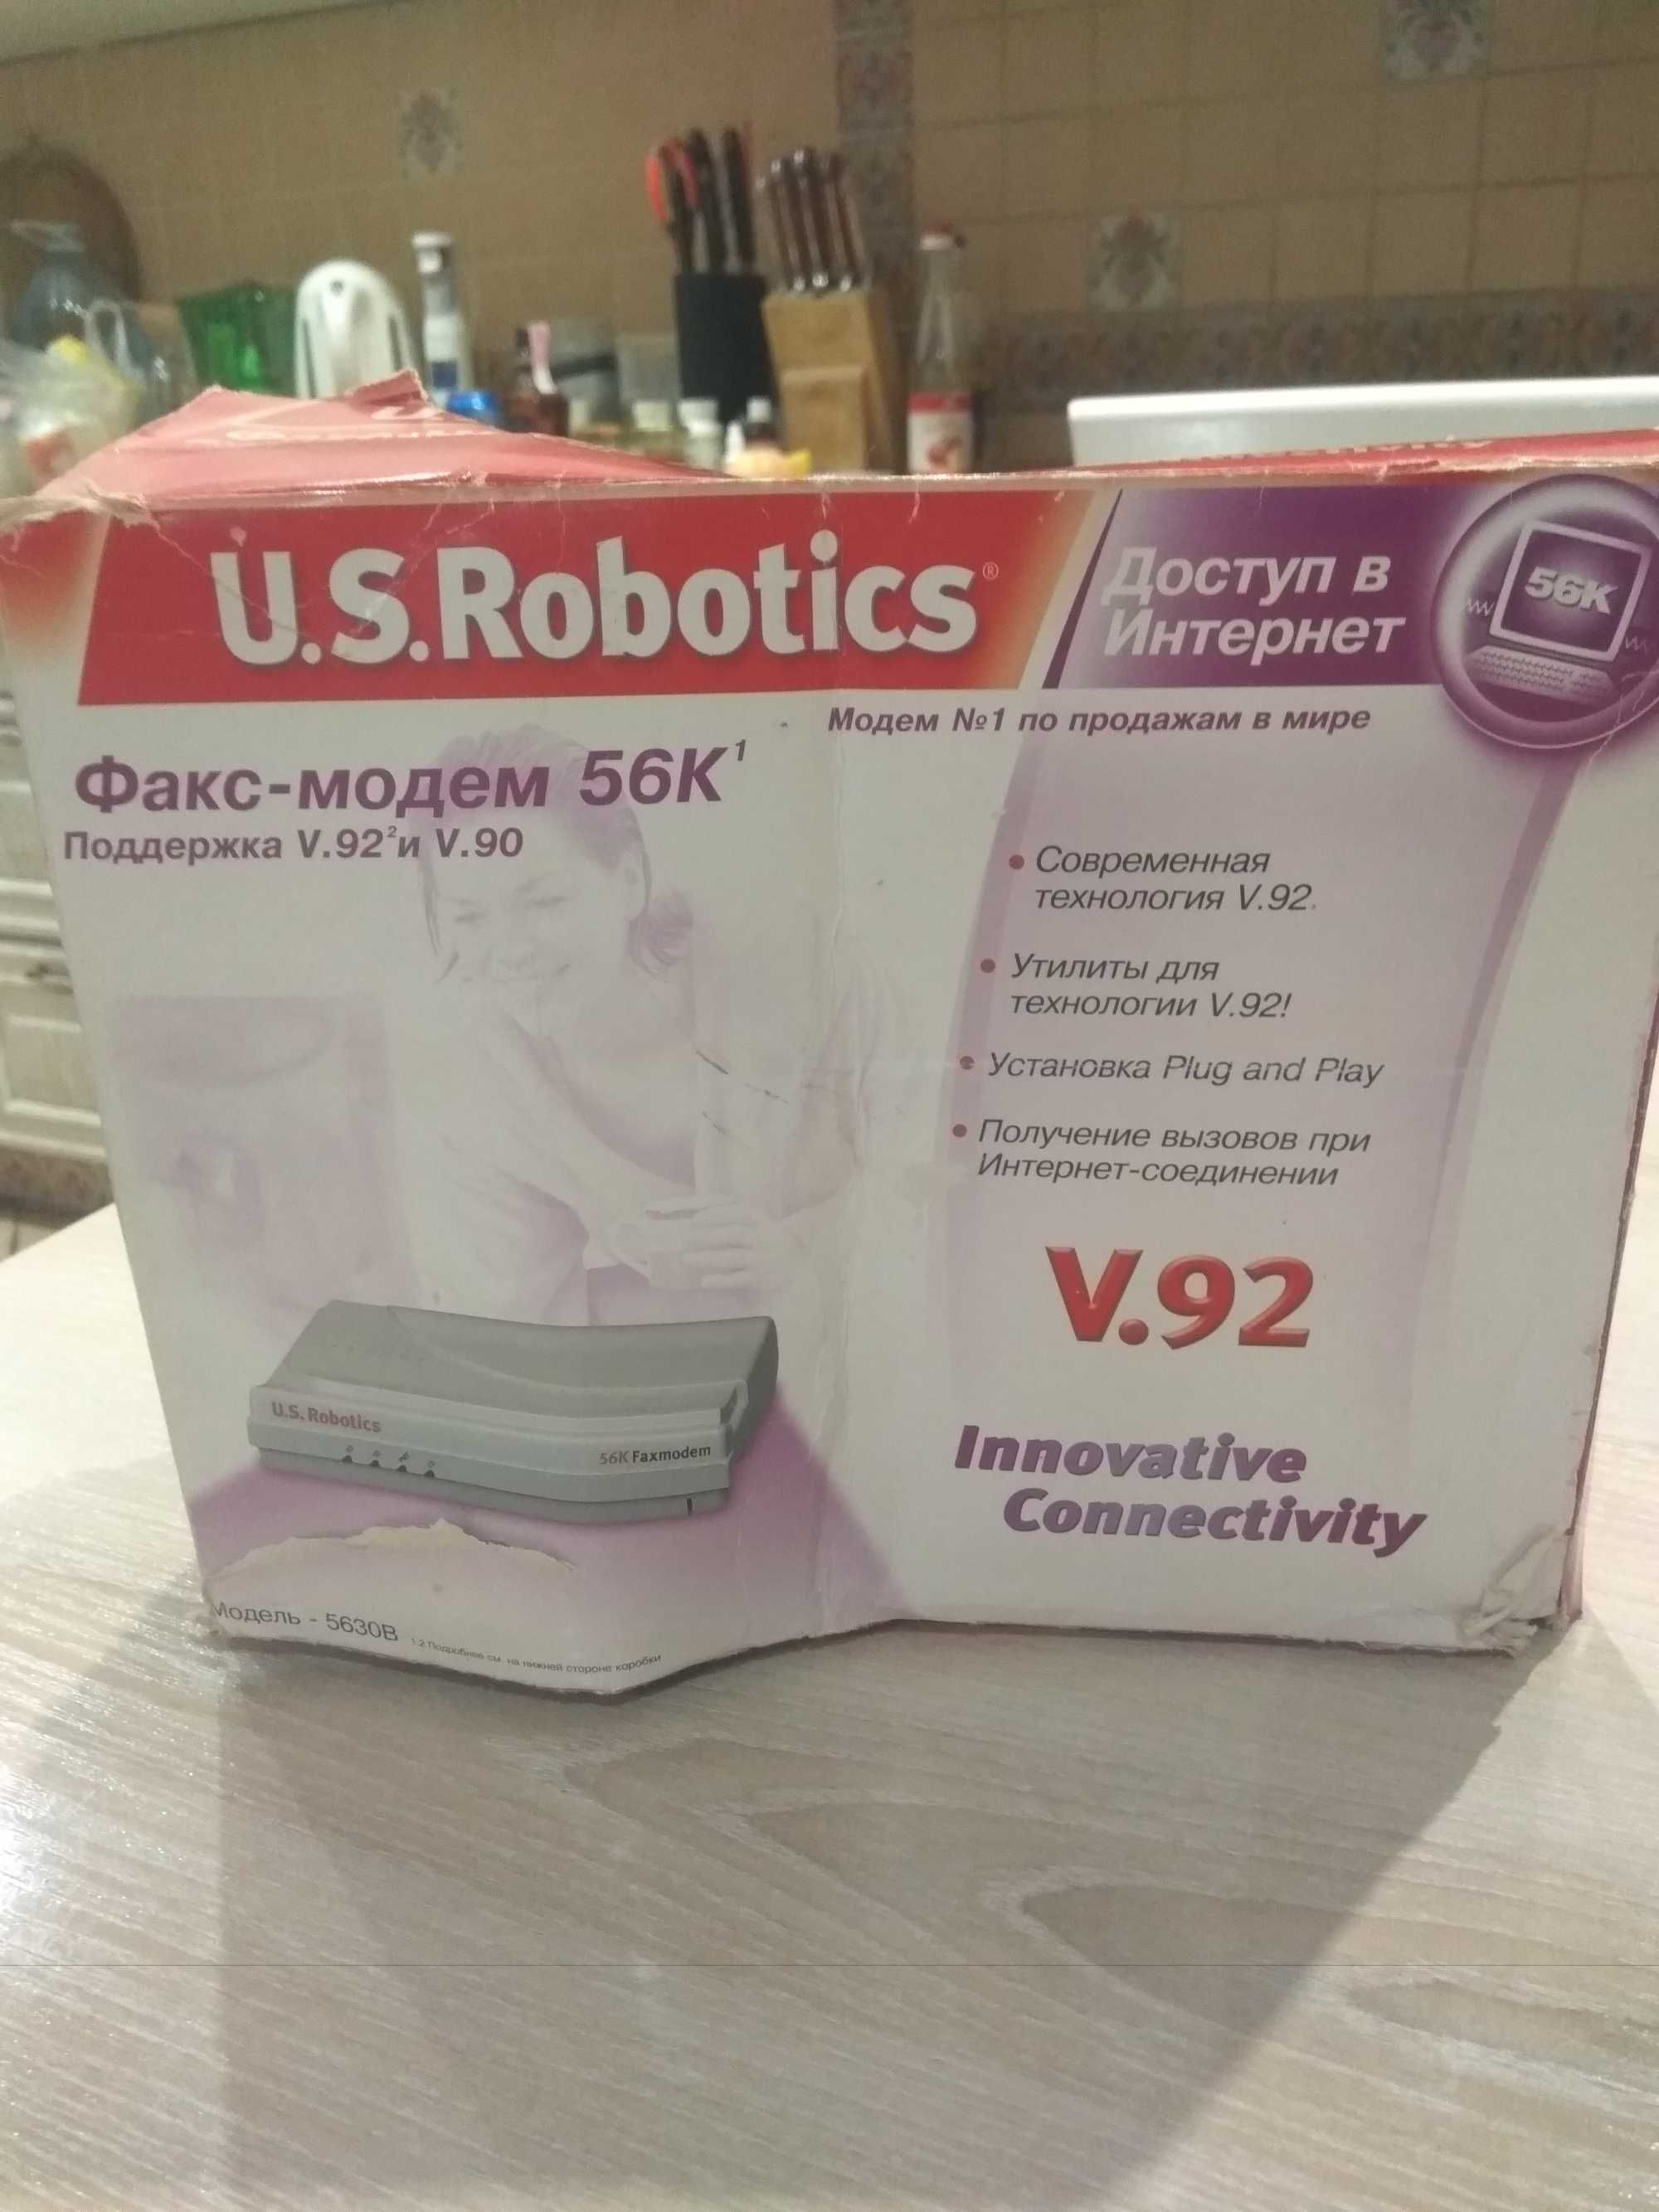 Факс-мадем 56К1 U.S.Robotics